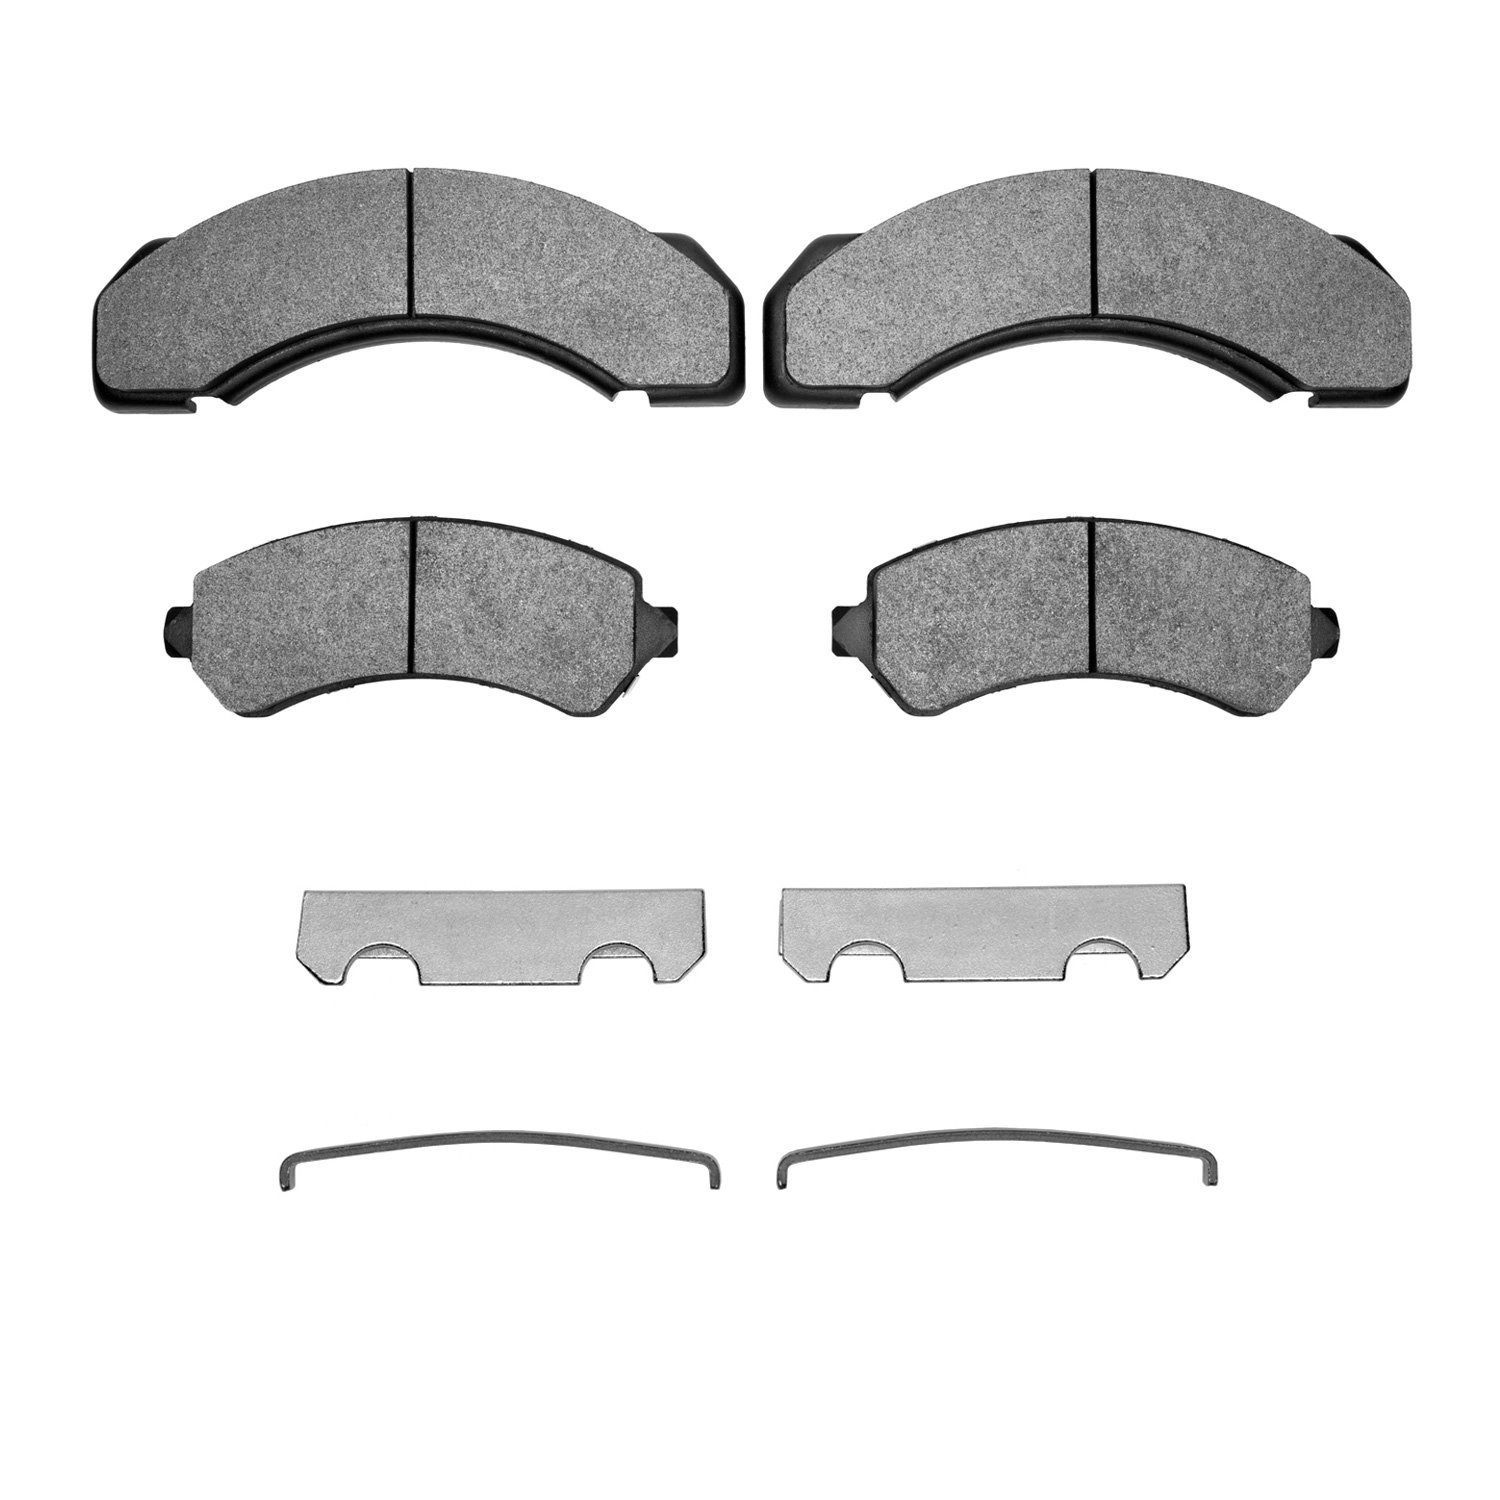 1311-0717-01 3000-Series Semi-Metallic Brake Pads & Hardware Kit, 1995-2006 Multiple Makes/Models, Position: Rear,Fr,Fr & Rr,Fro